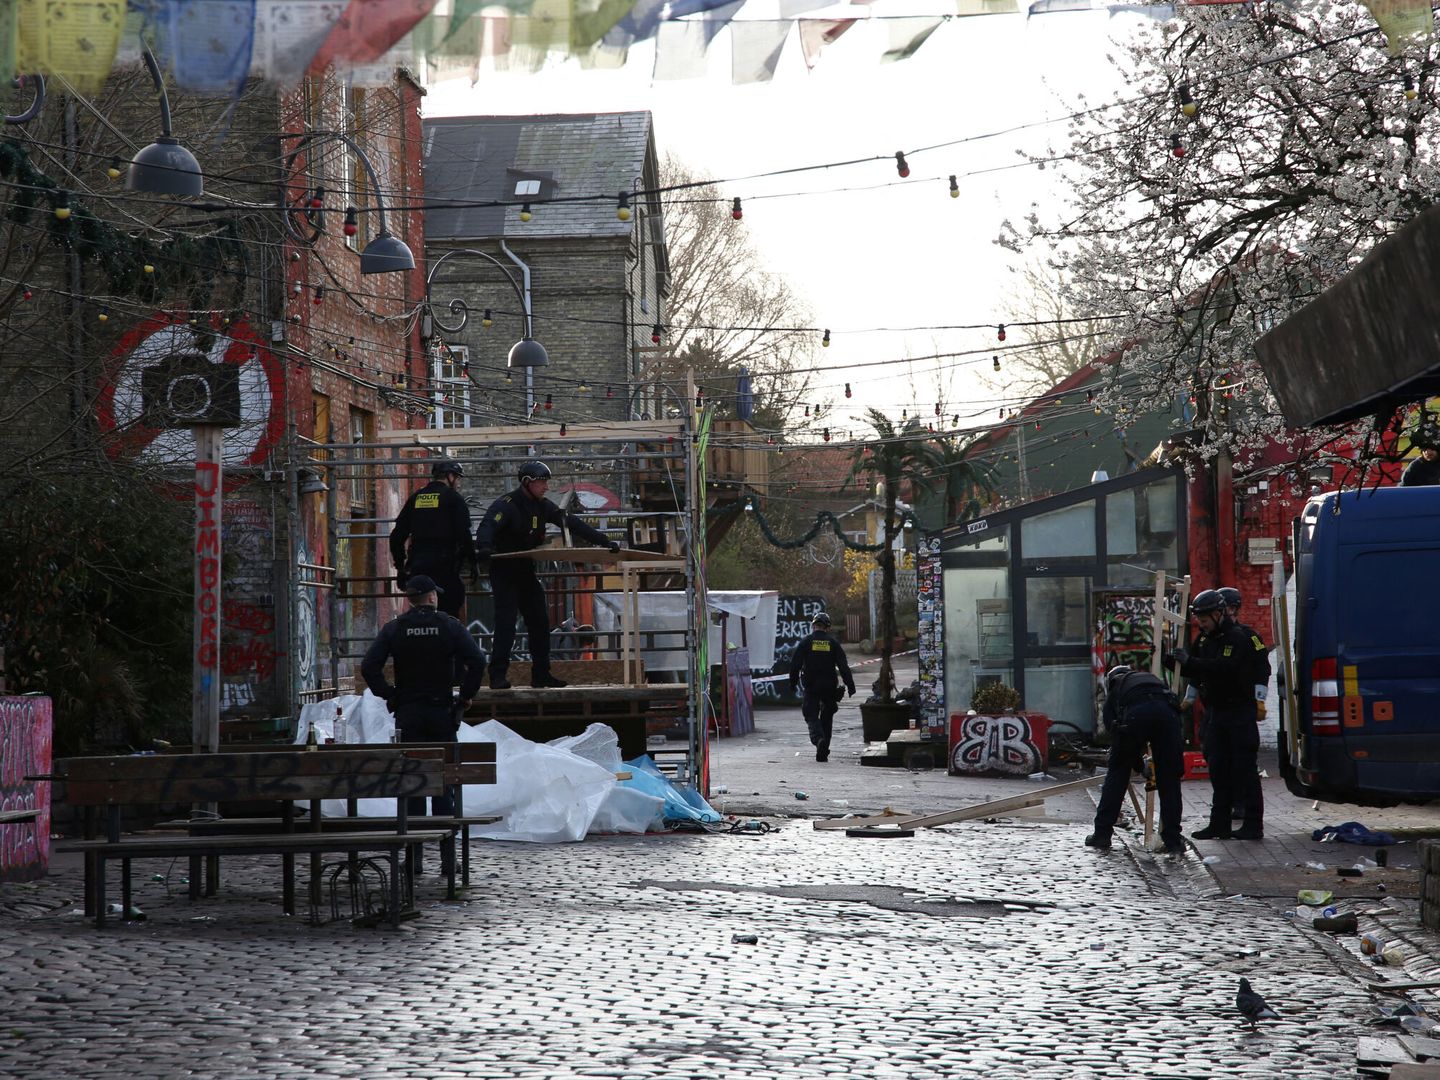 Agentes de policía limpian los puestos usados para vender cannabis en Christiania. (Reuters/Tom Little)